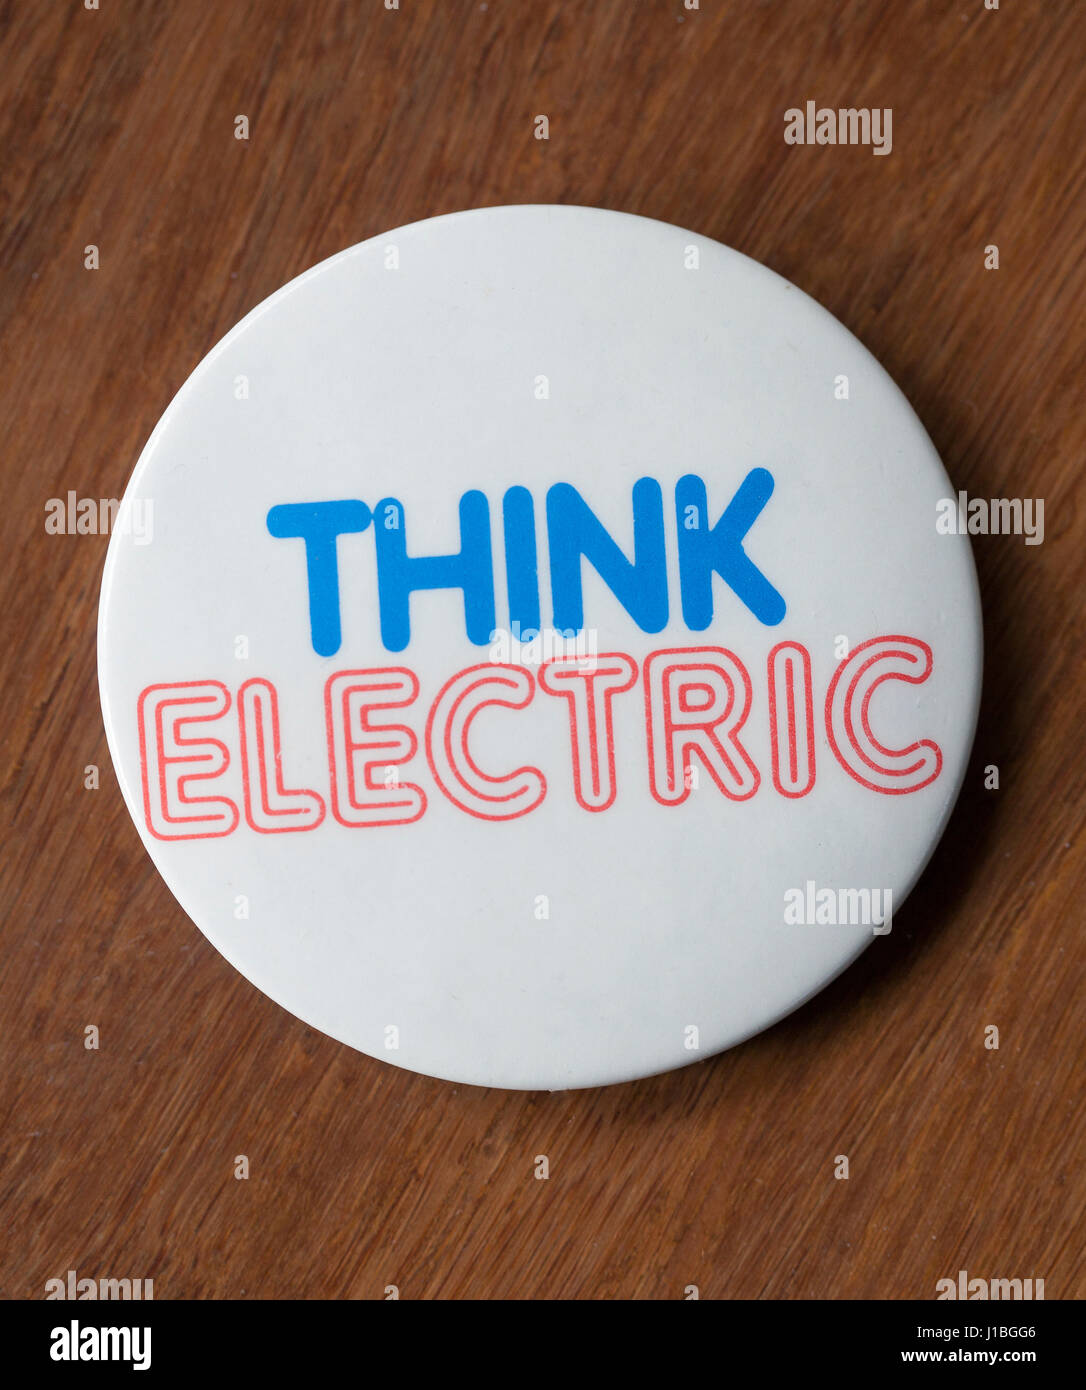 Pensez Vintage Electric Badge - Campagne de publicité britannique Banque D'Images